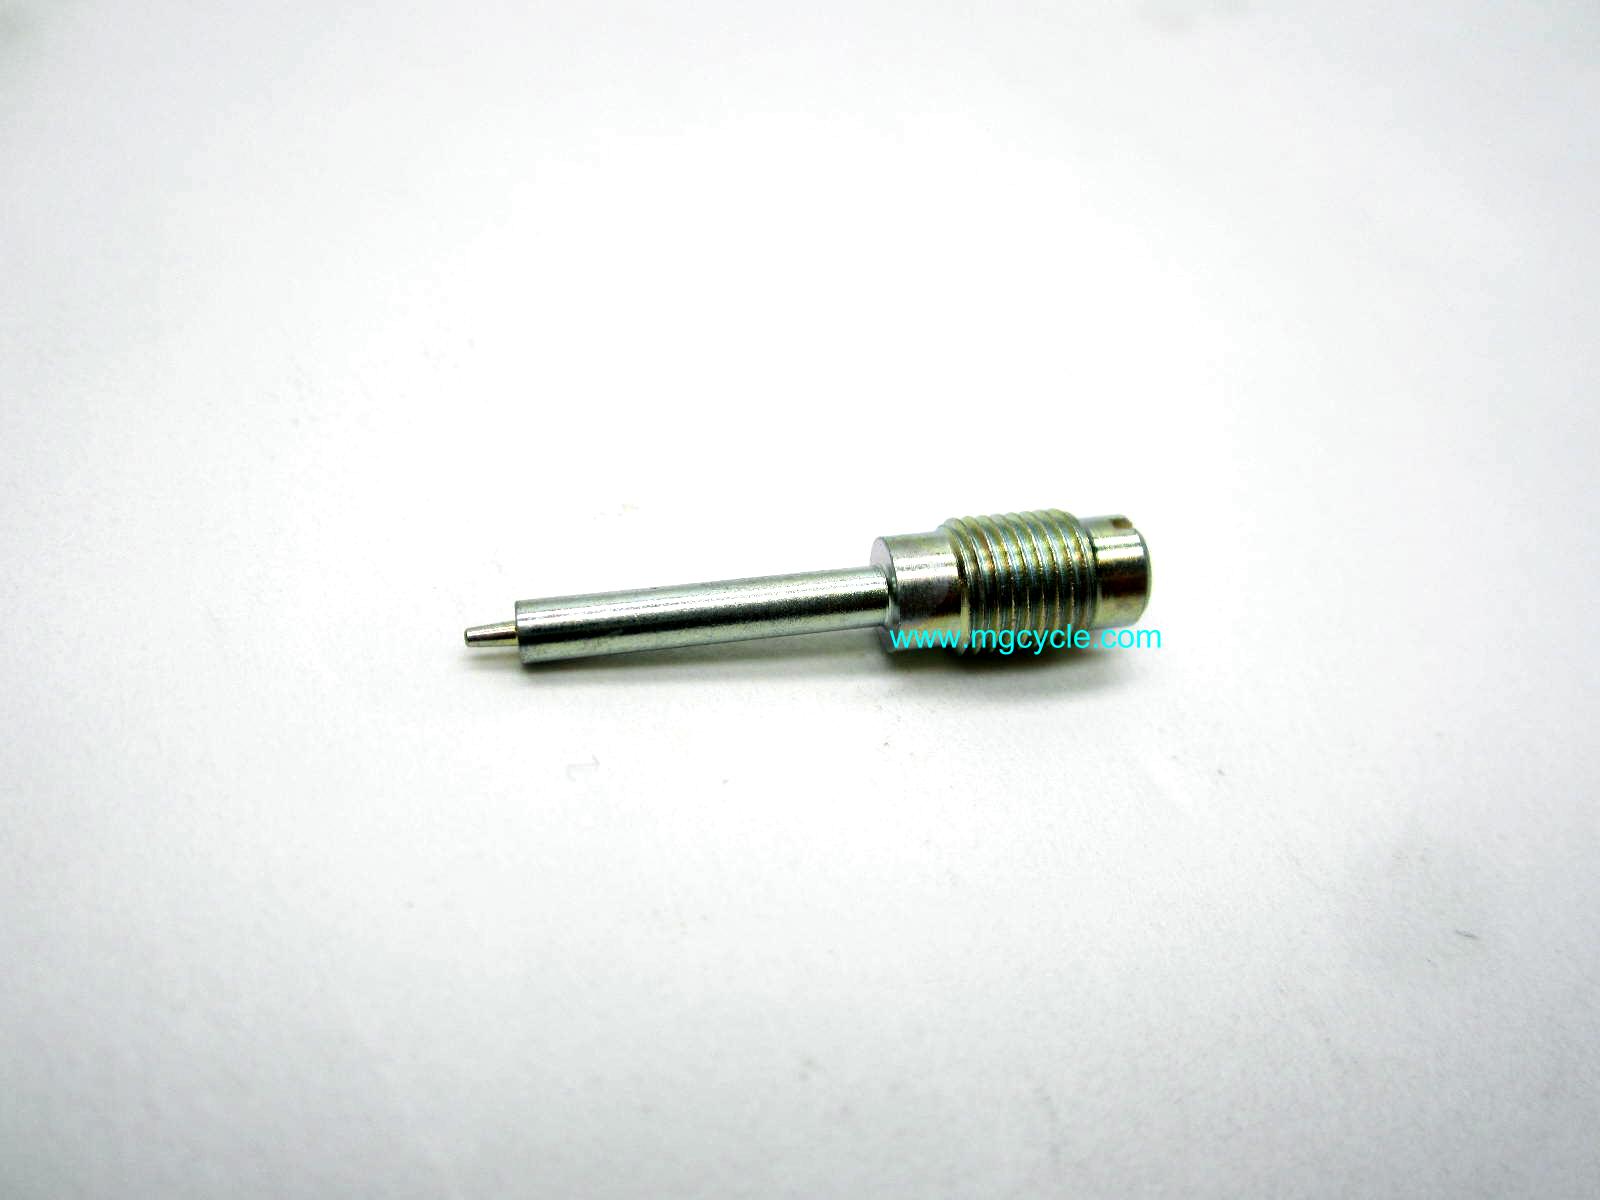 Dellorto 7449 mixture screw VHB29 VHB30 VHBZ PHF carbs (33mm) - Click Image to Close